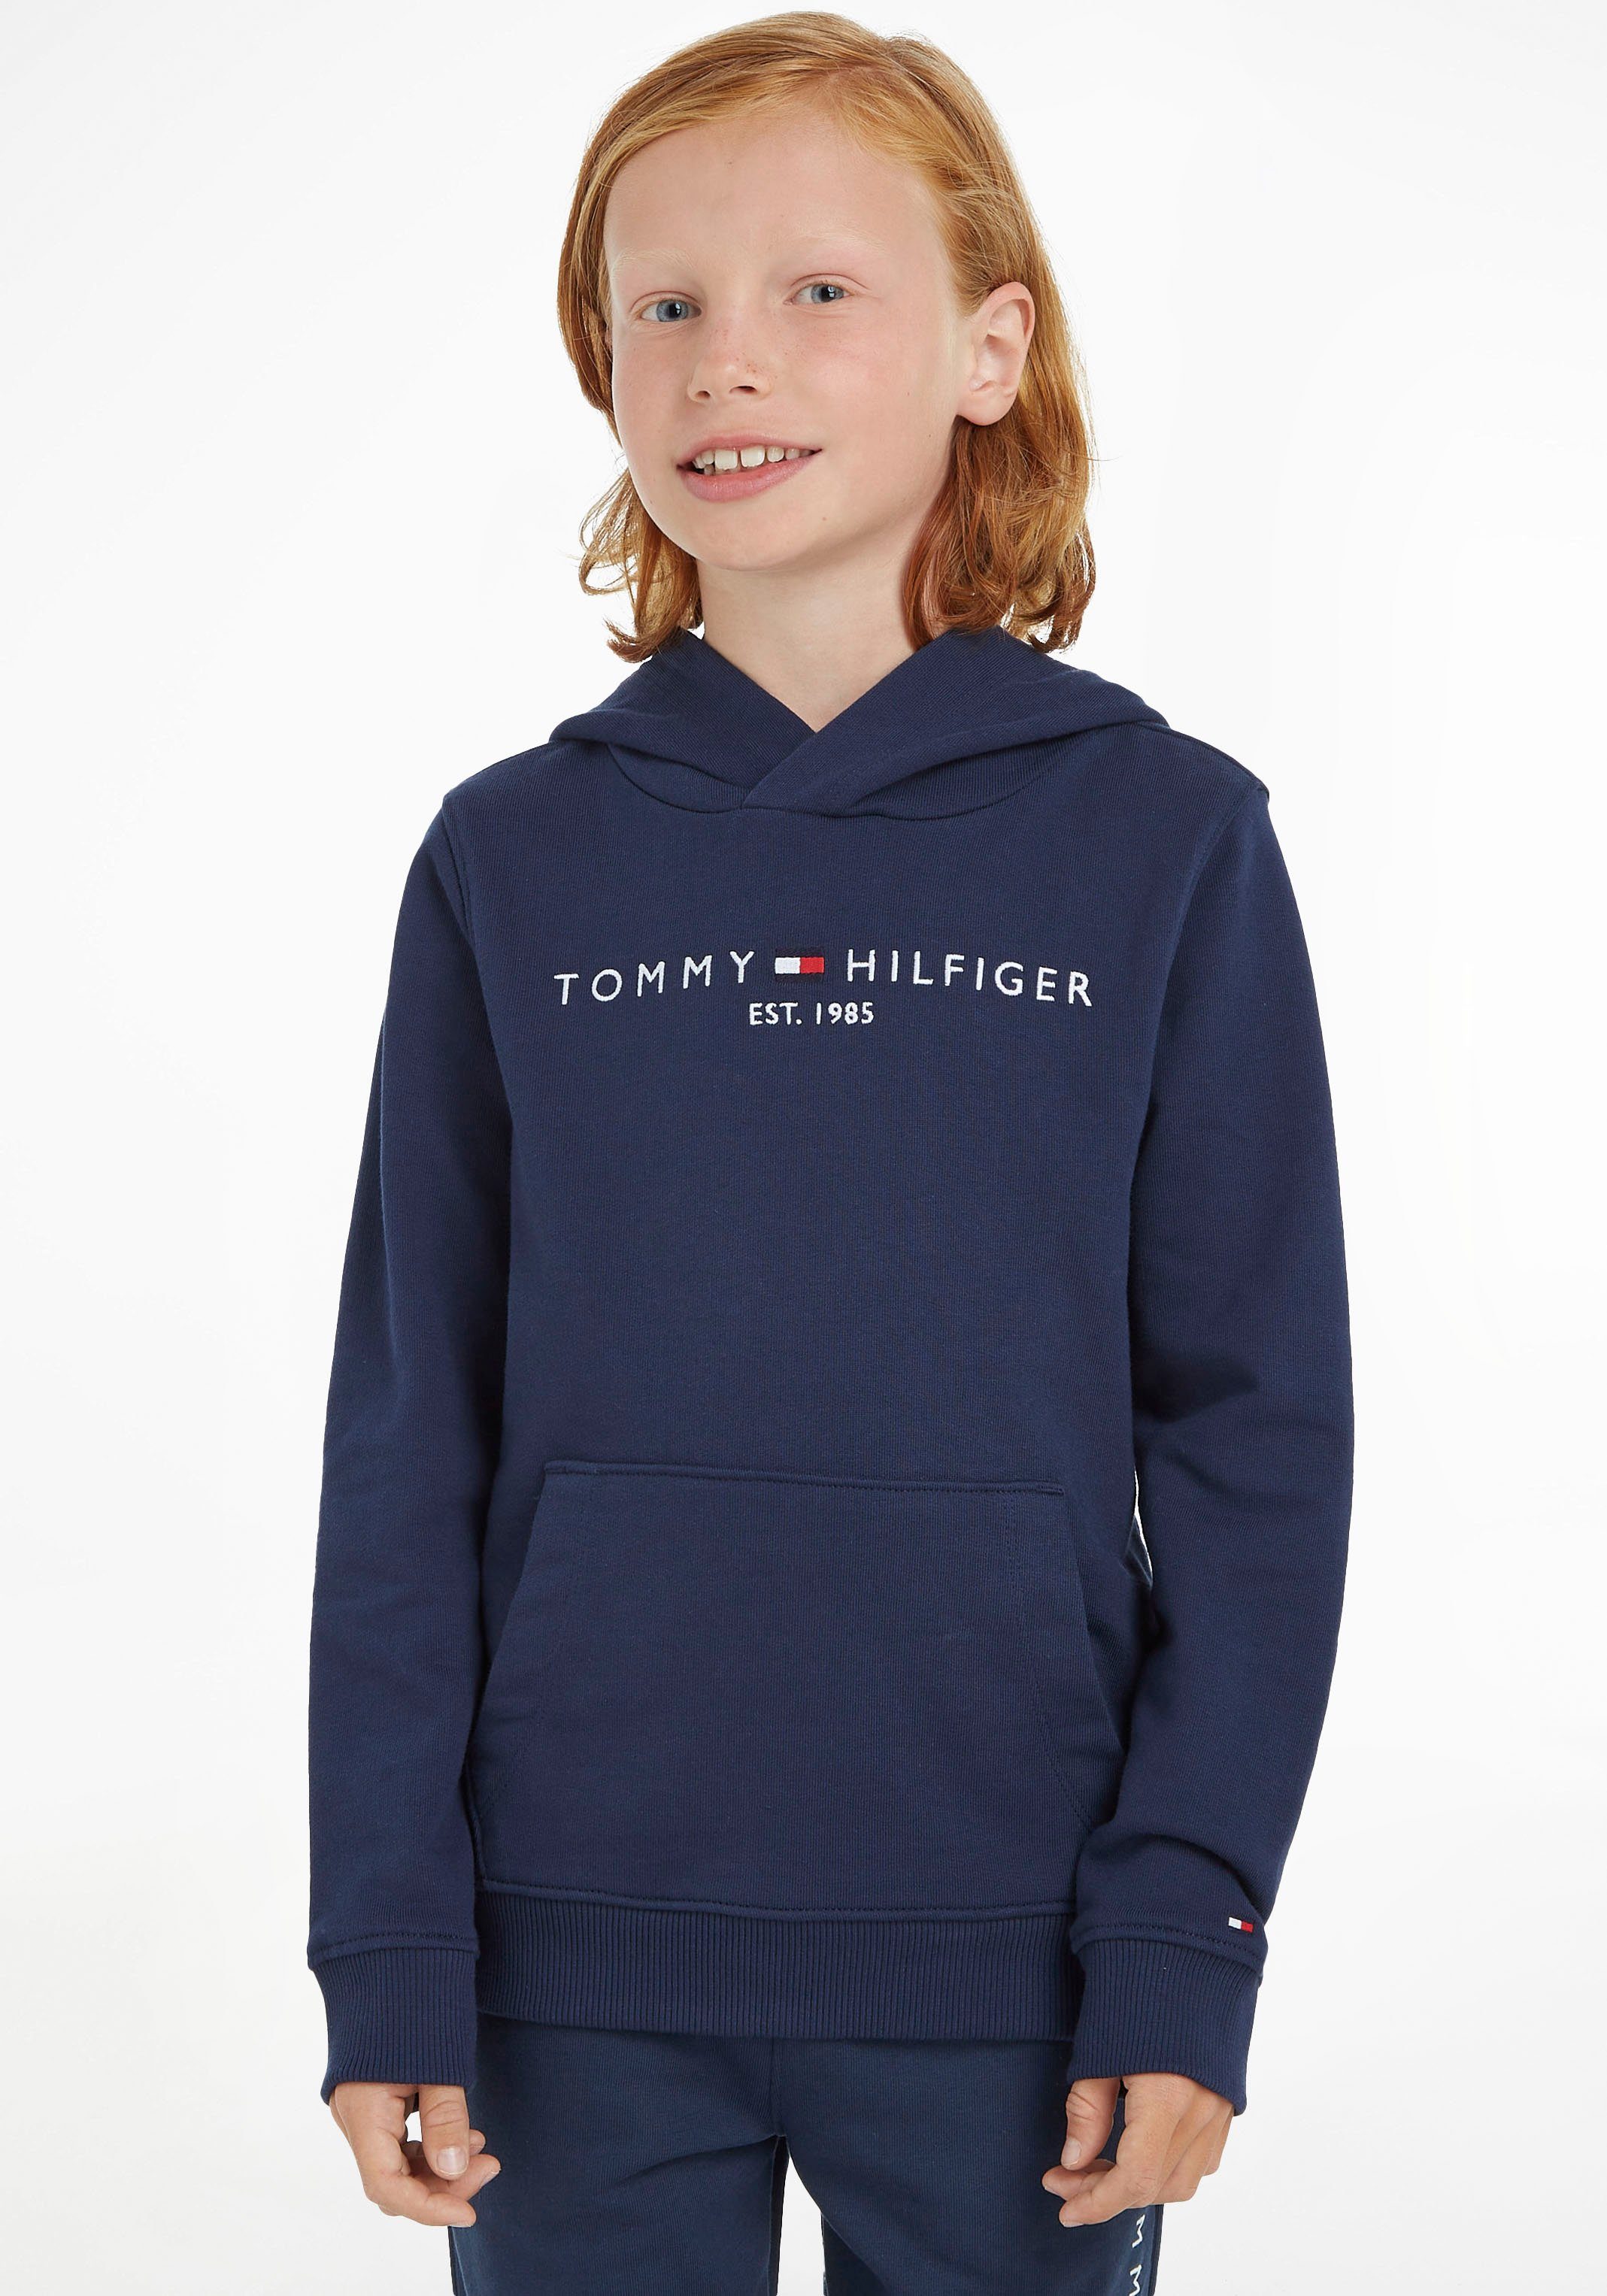 Tommy Hilfiger Kapuzensweatshirt ESSENTIAL HOODIE Kids Kinder Jungen Mädchen Junior MiniMe,für und